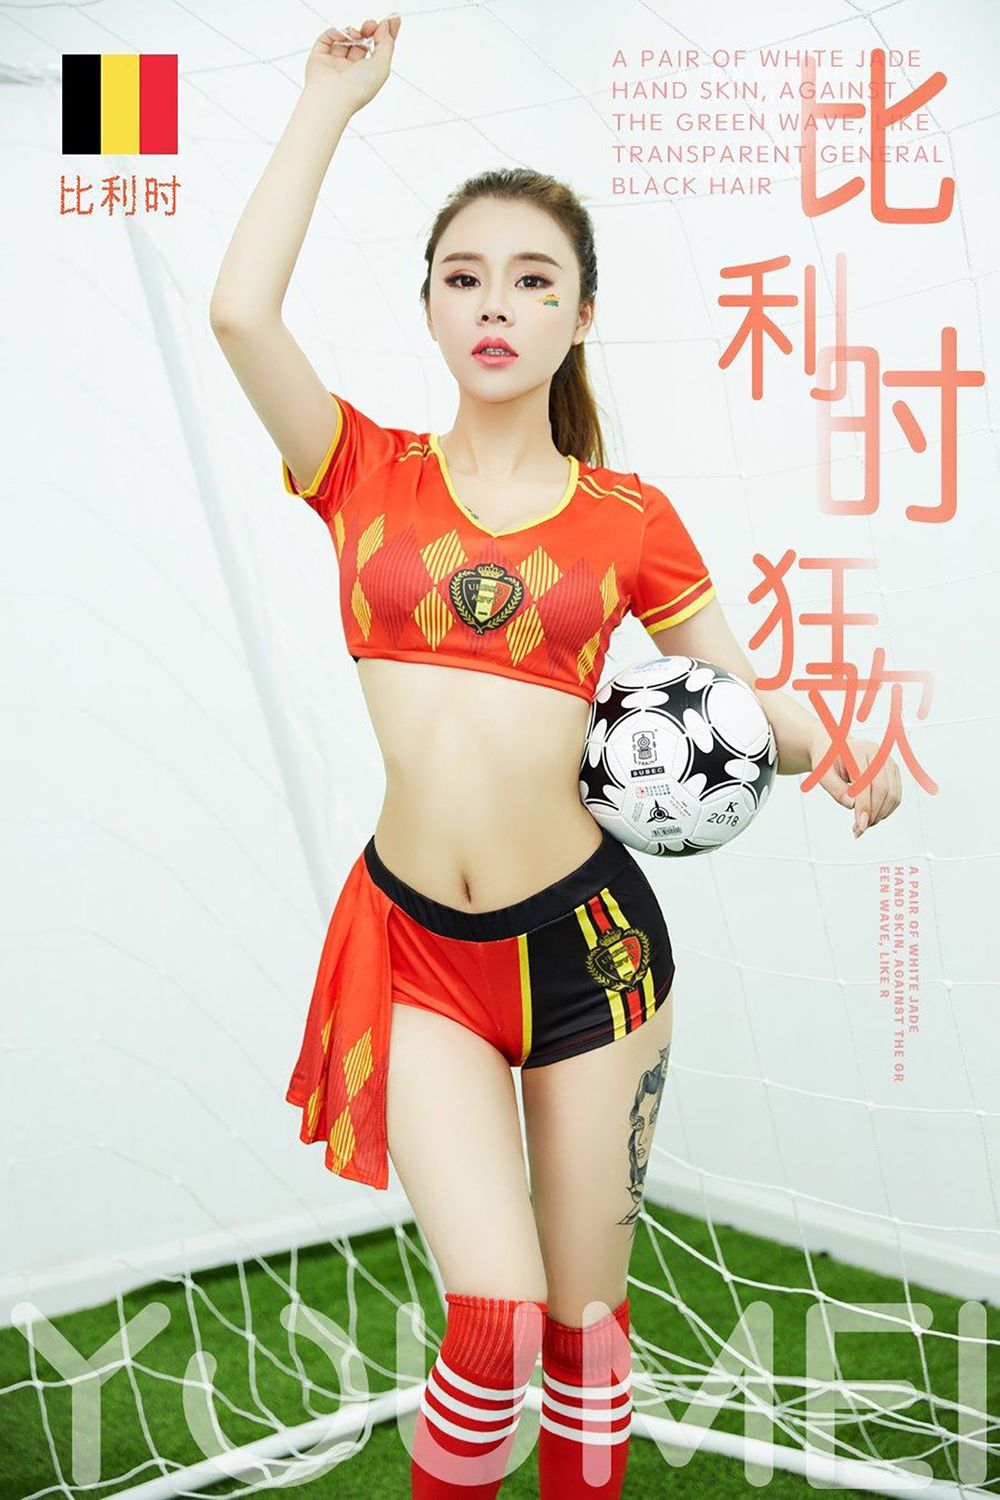 美女模特爱丽莎Lisa - 足球宝贝装扮狂欢主题写真